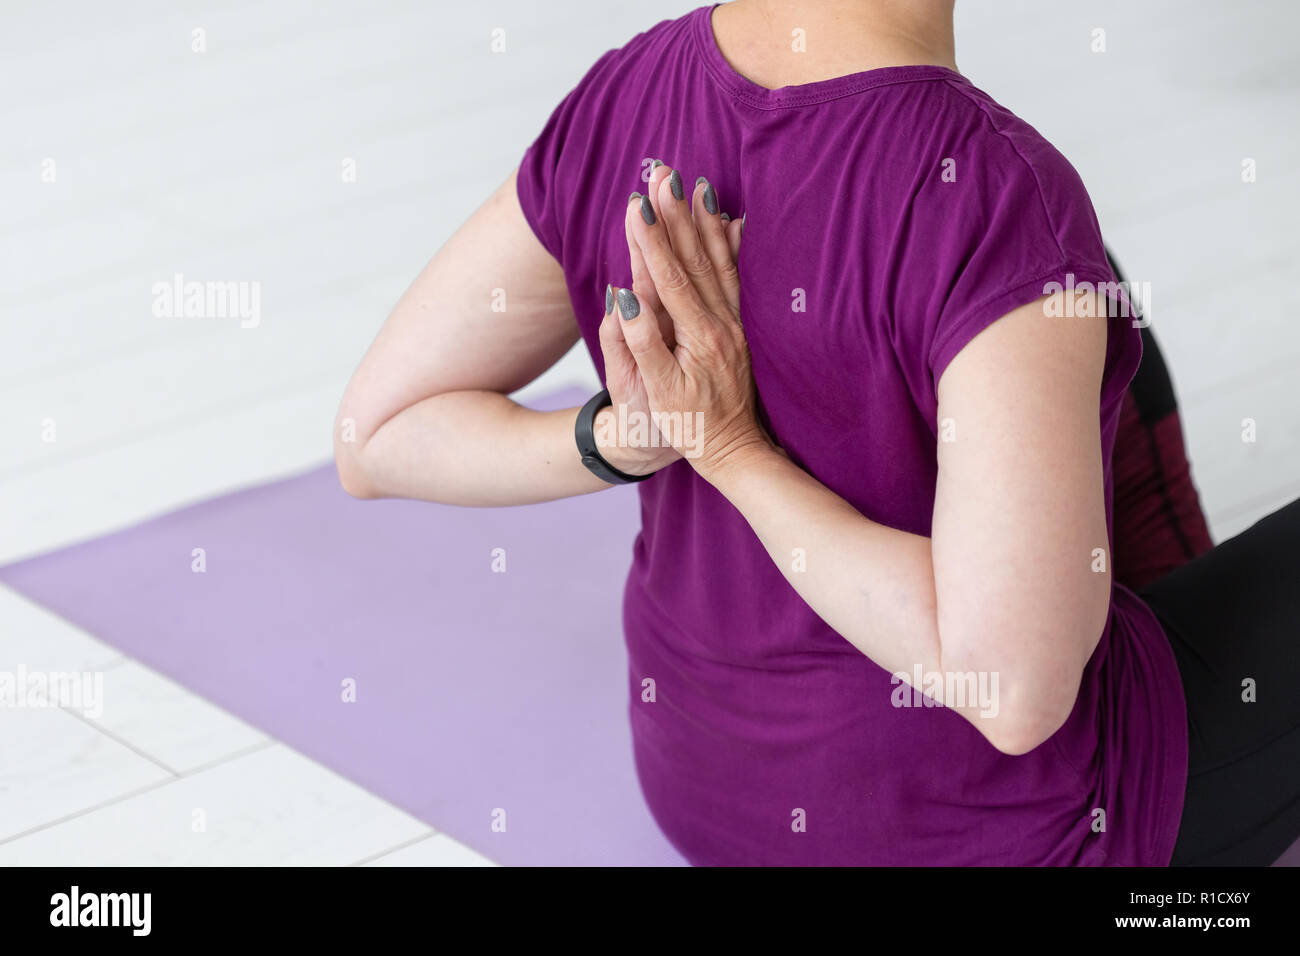 Leute, Sport, Yoga und Gesundheit Konzept - Mitte - gealterte Frau sitzt auf der Yogamatte mit Hände hinter dem Rücken Stockfoto